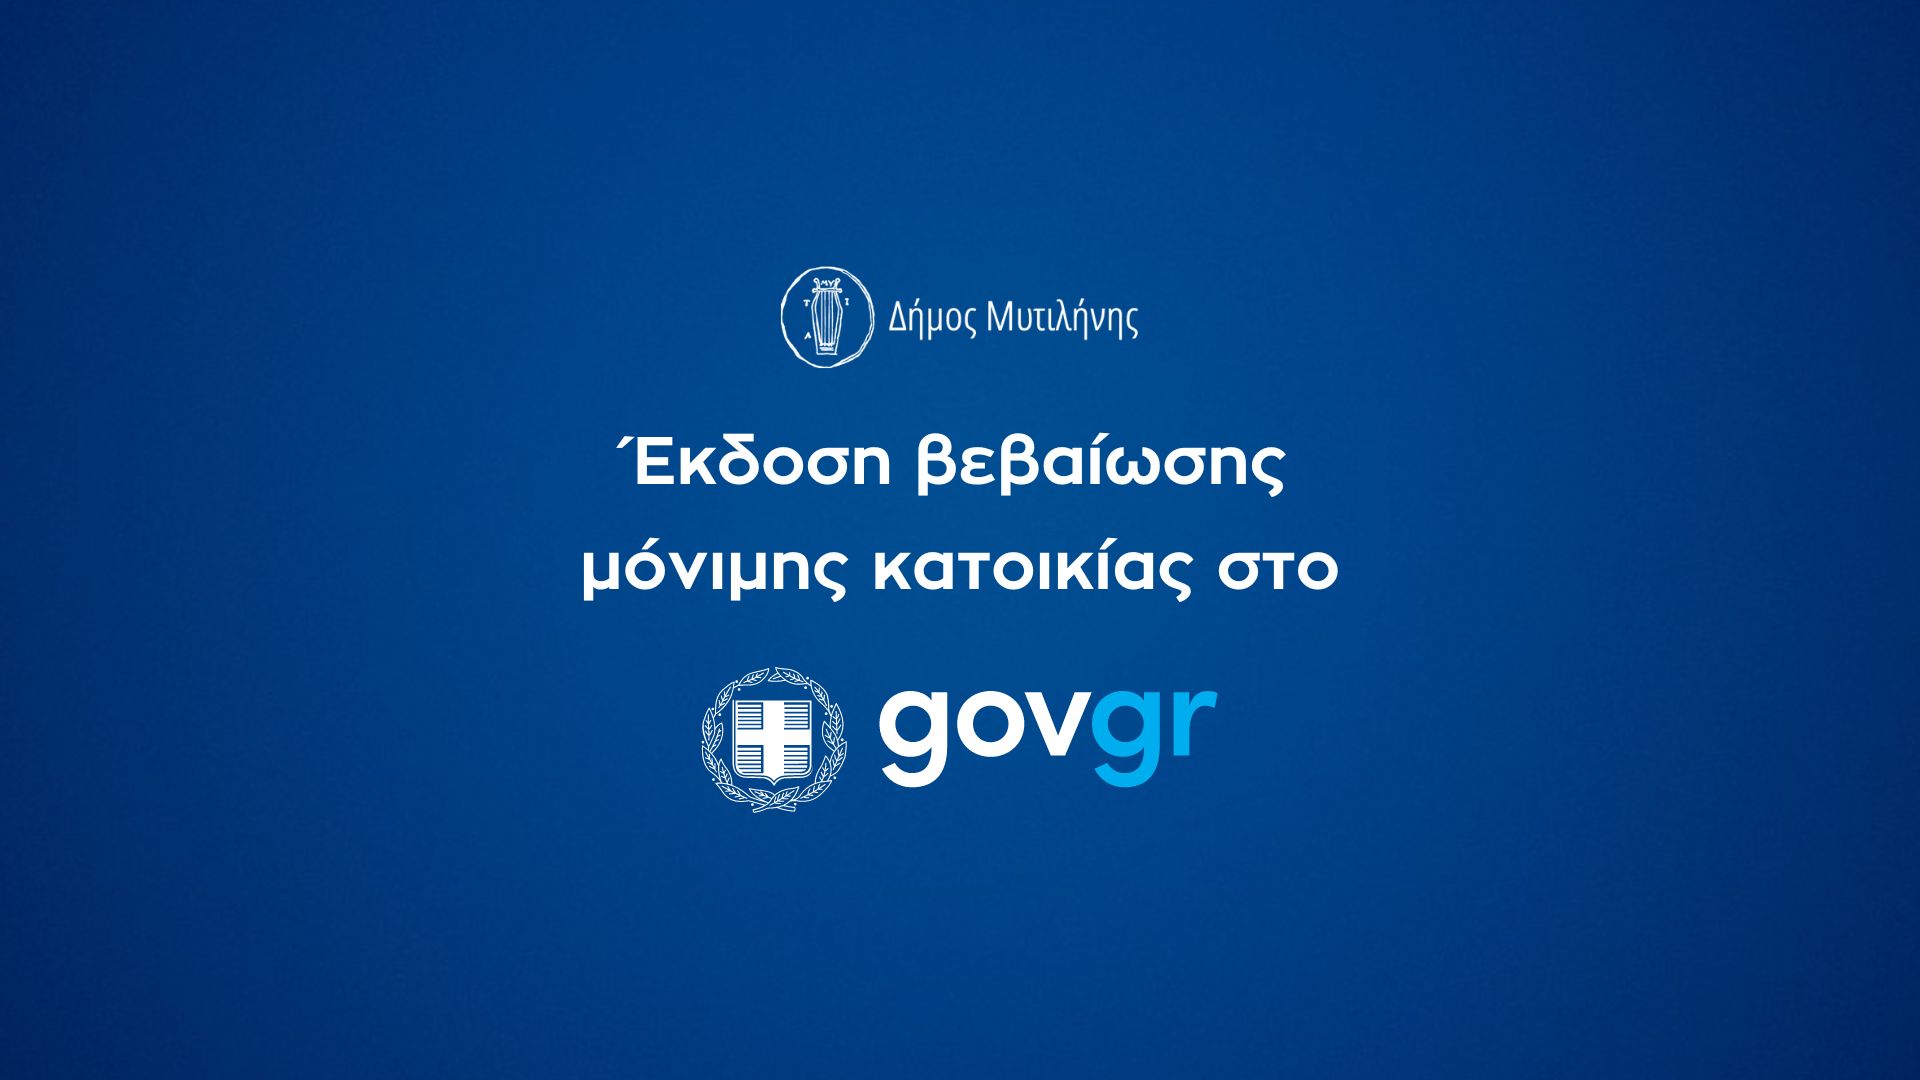 Έκδοση βεβαίωσης μόνιμης κατοικίας από τον Δήμο Μυτιλήνης μέσω gov.gr